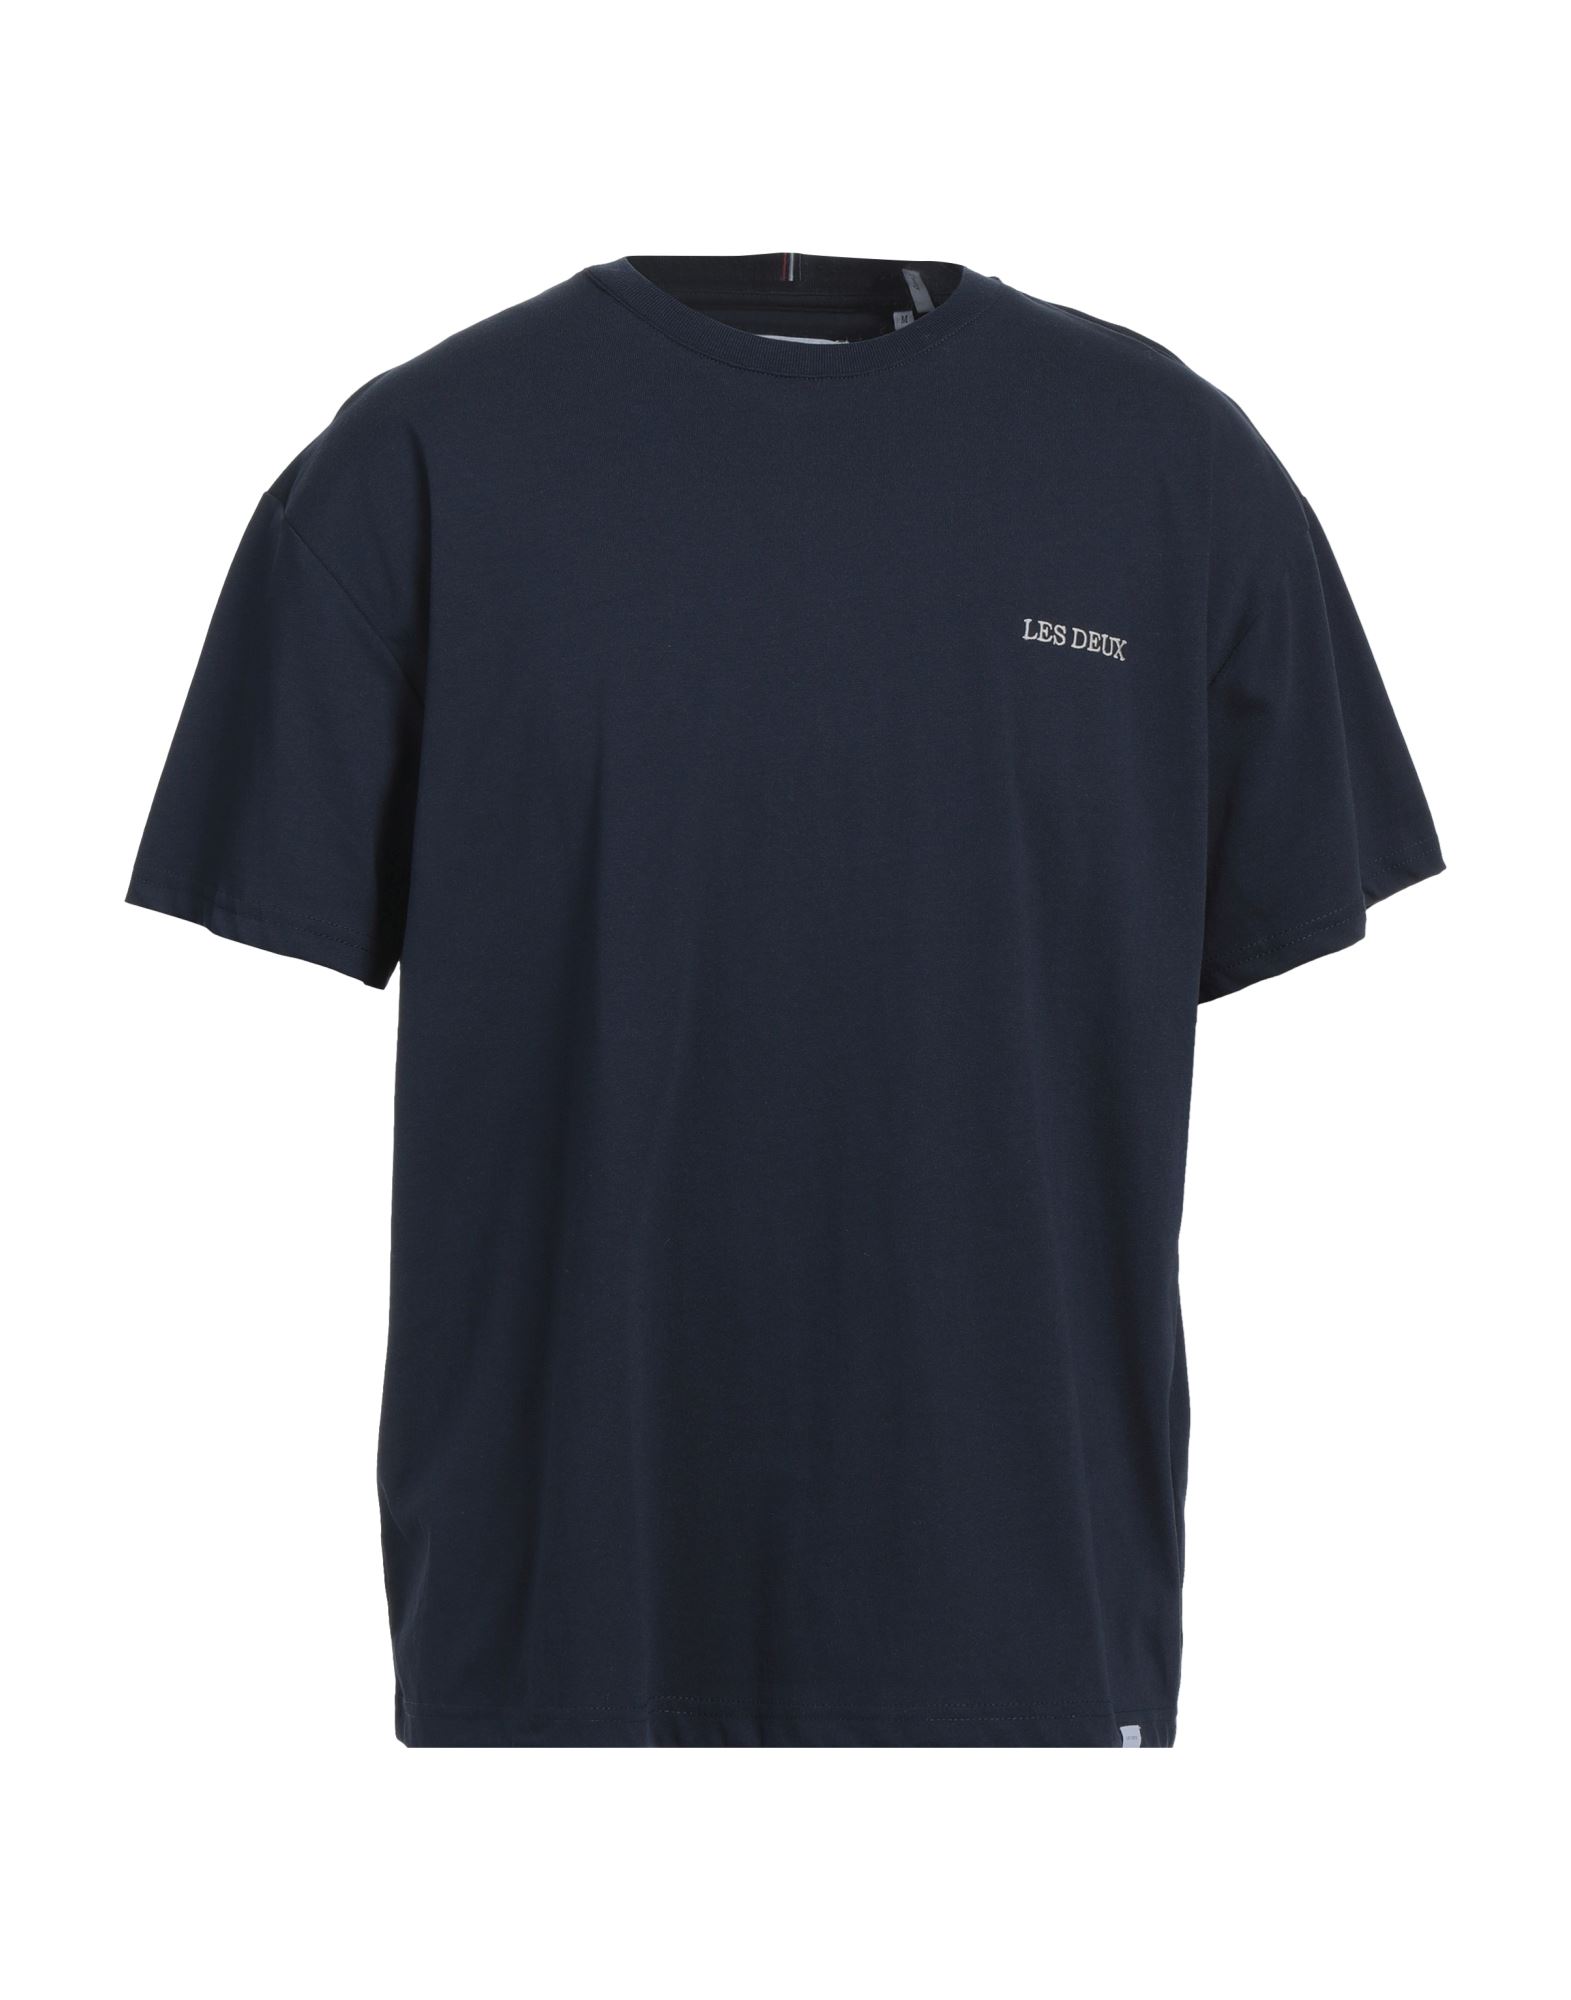 LES DEUX T-shirts Herren Nachtblau von LES DEUX